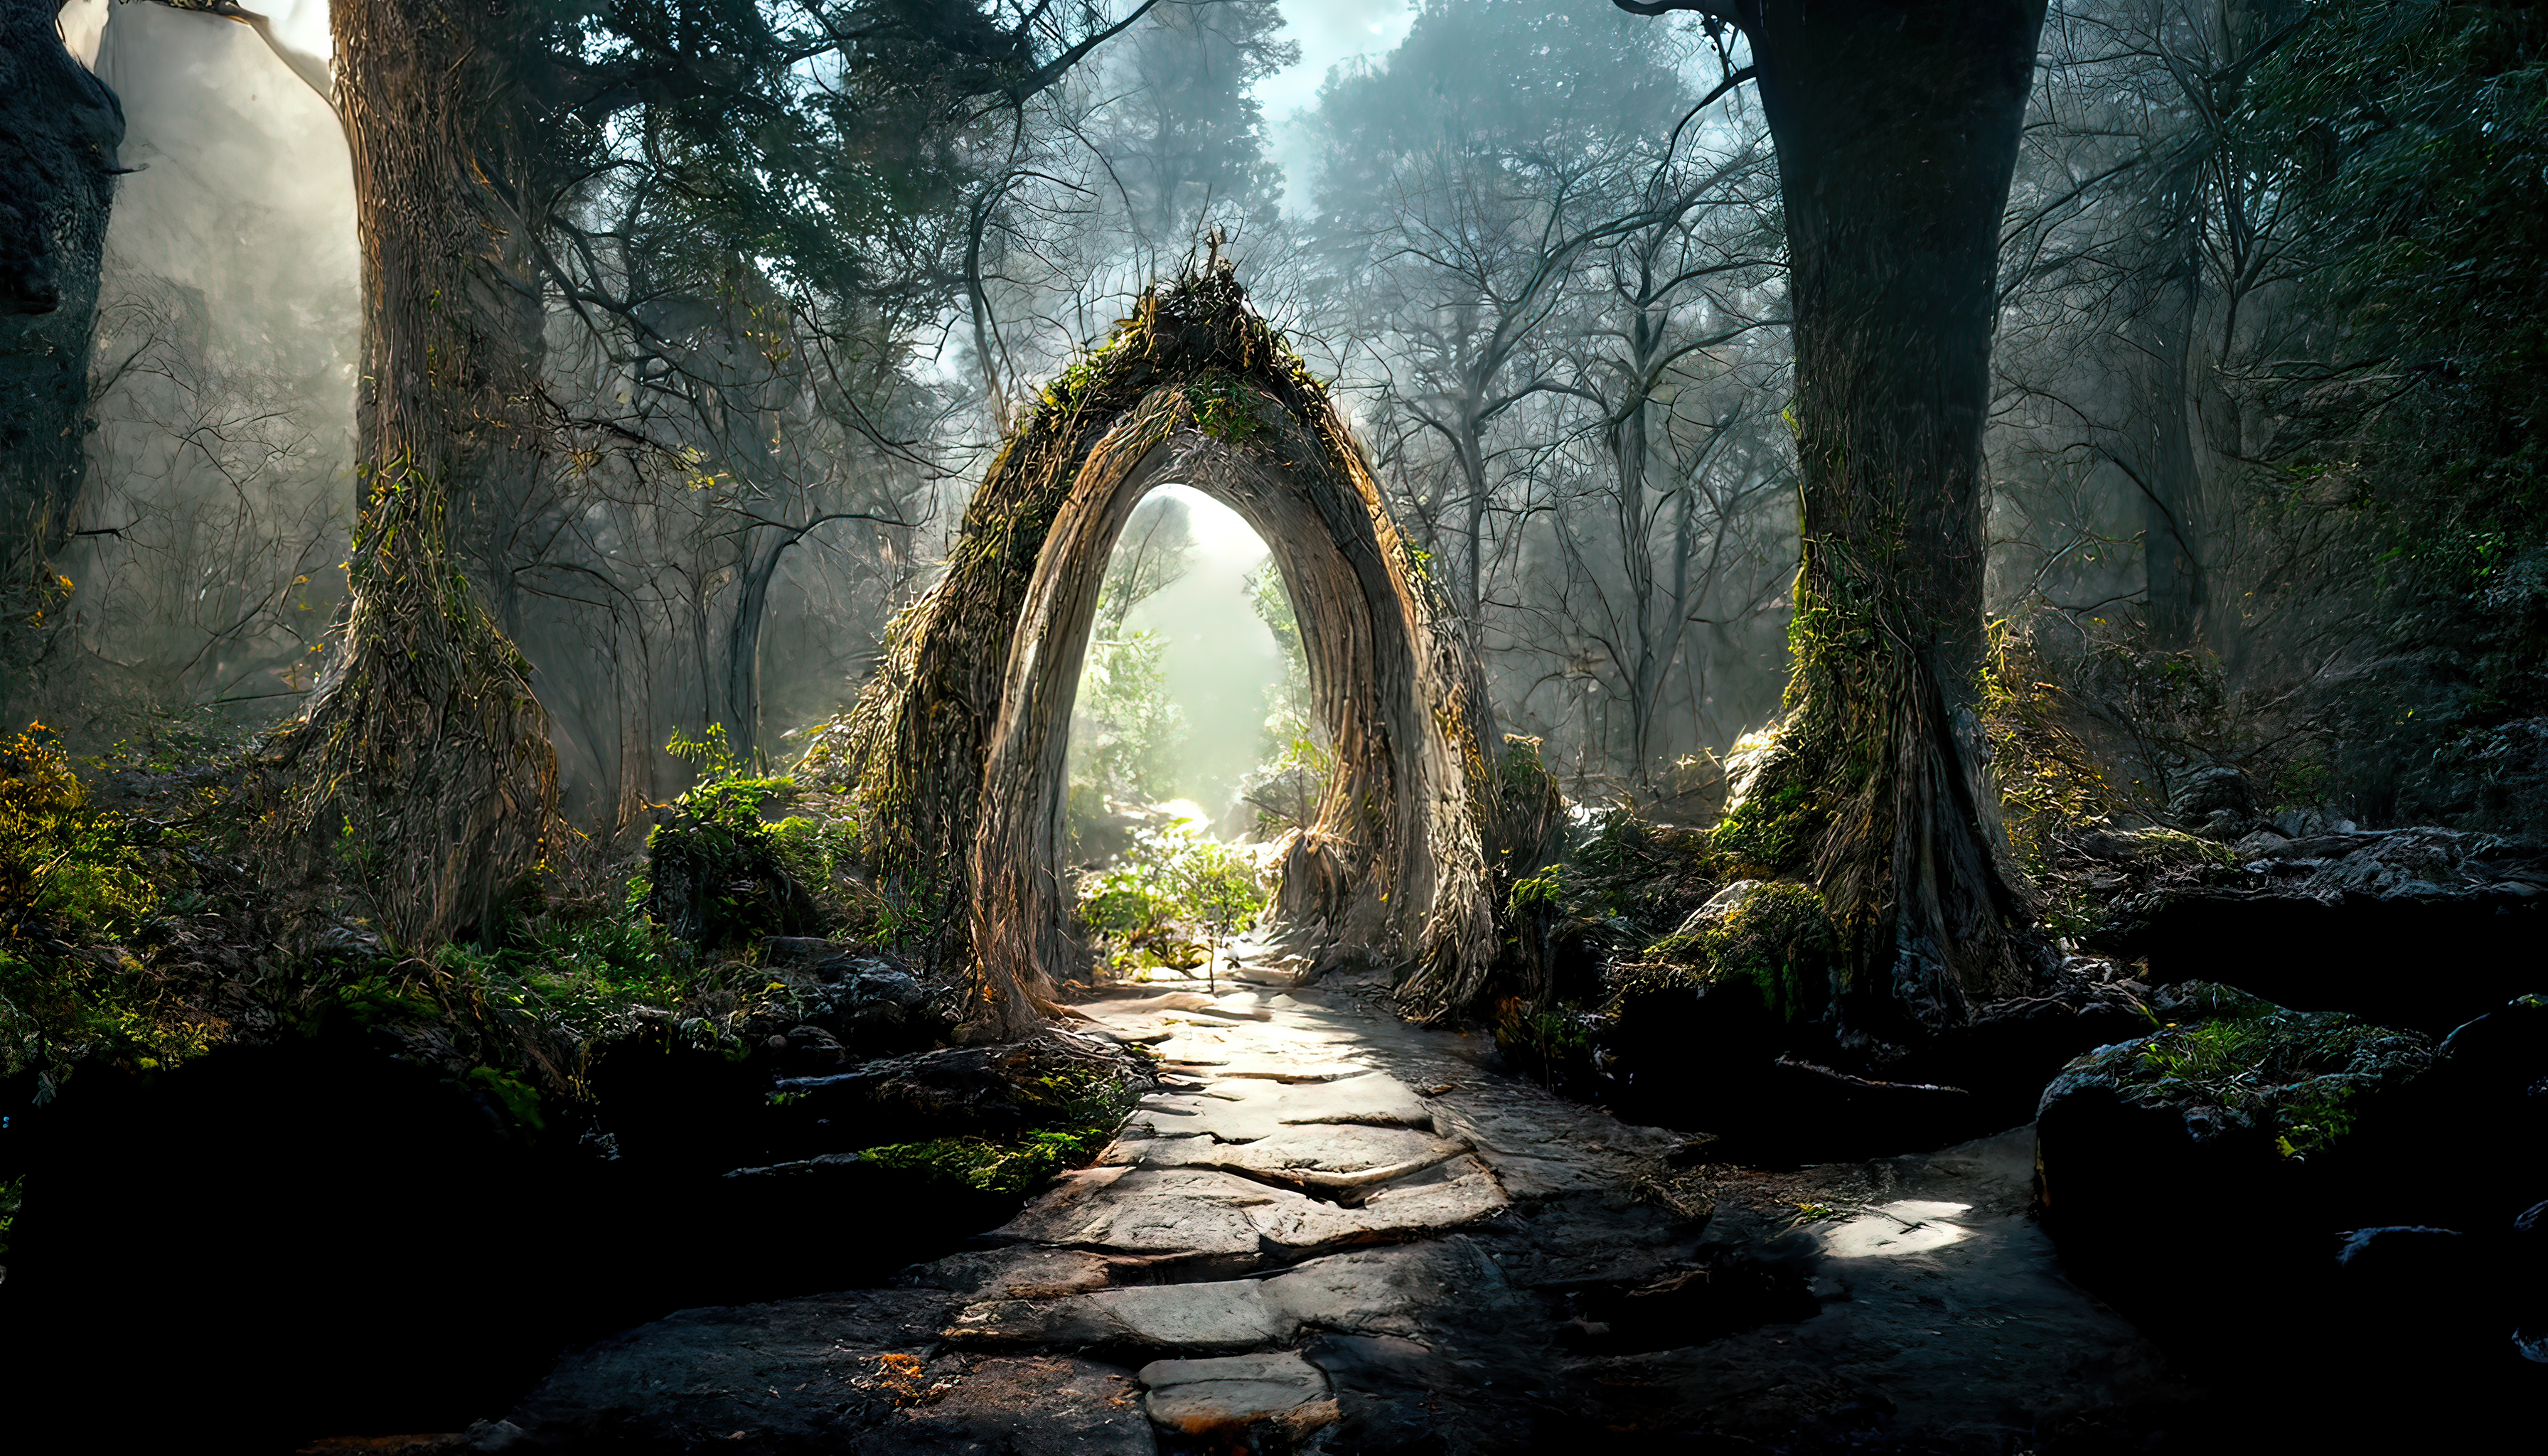 Elven Forest by Scott Richard by rich35211 on DeviantArt